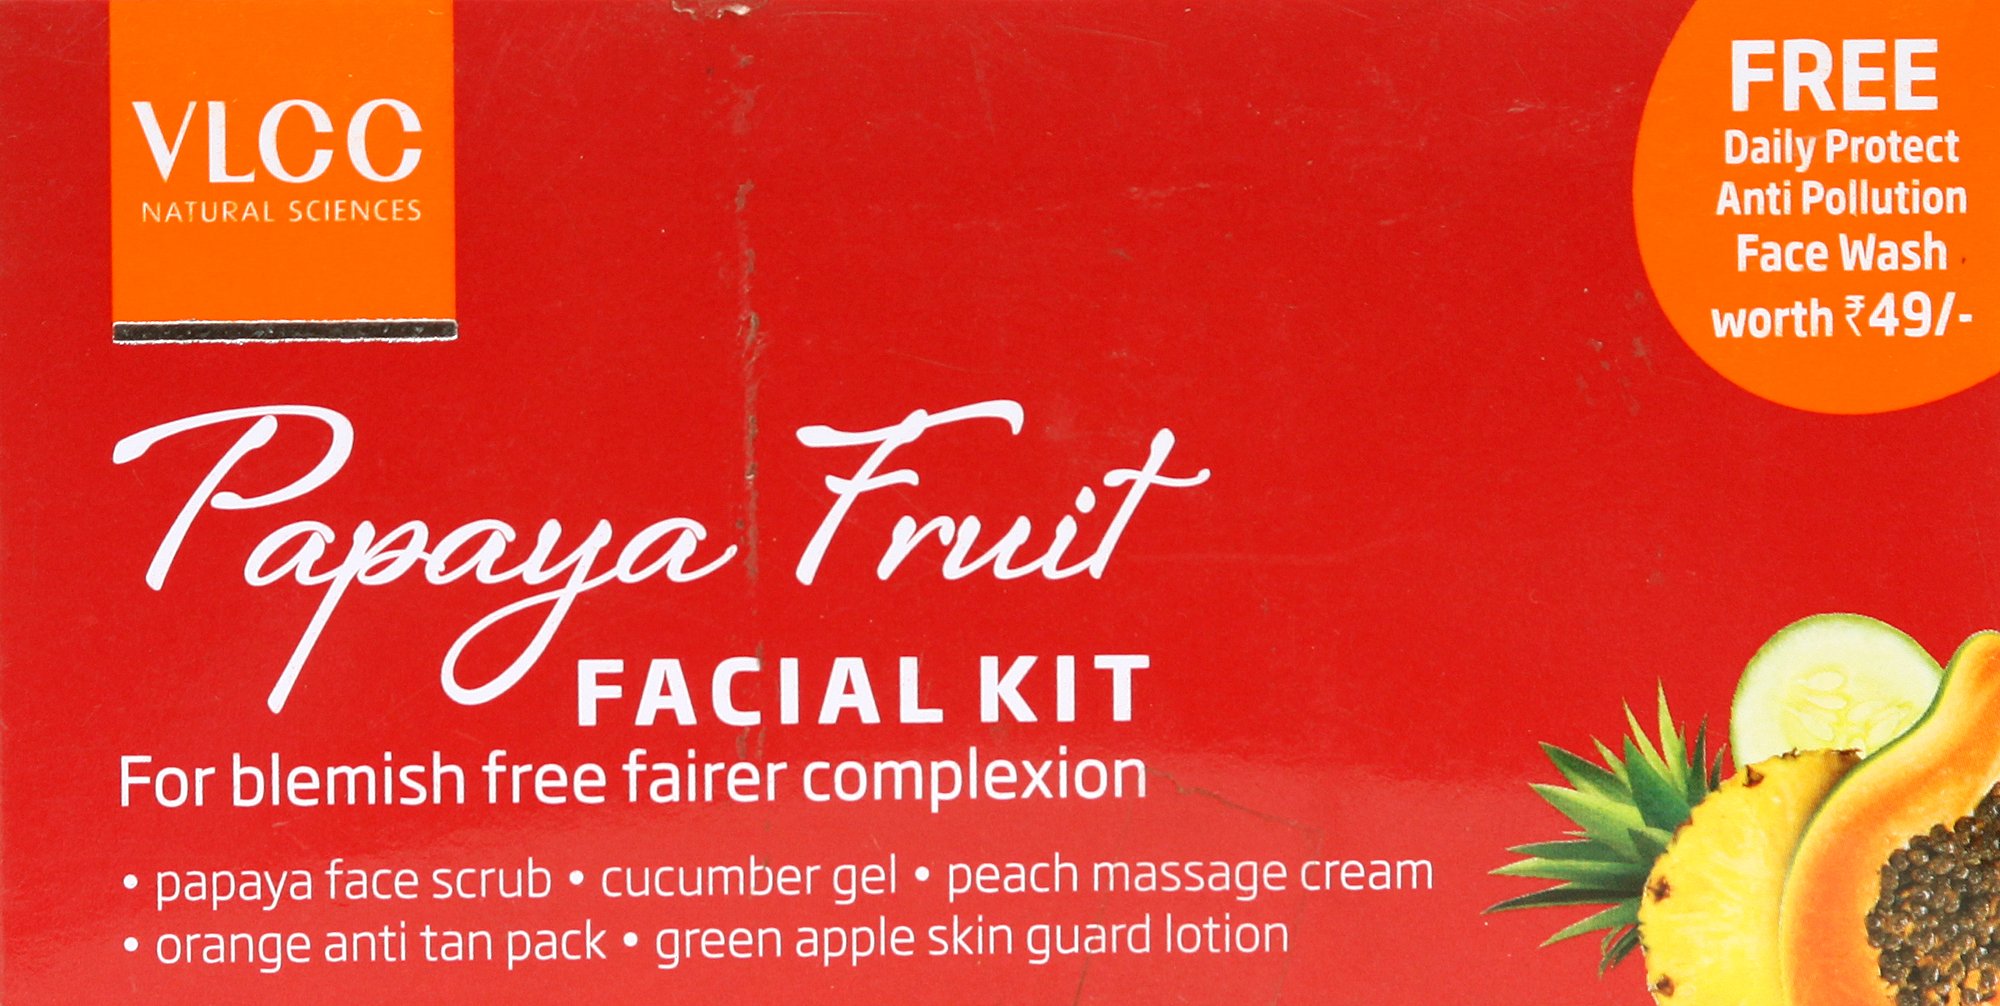 VLCC Papaya Fruit Facial Kit - book cover